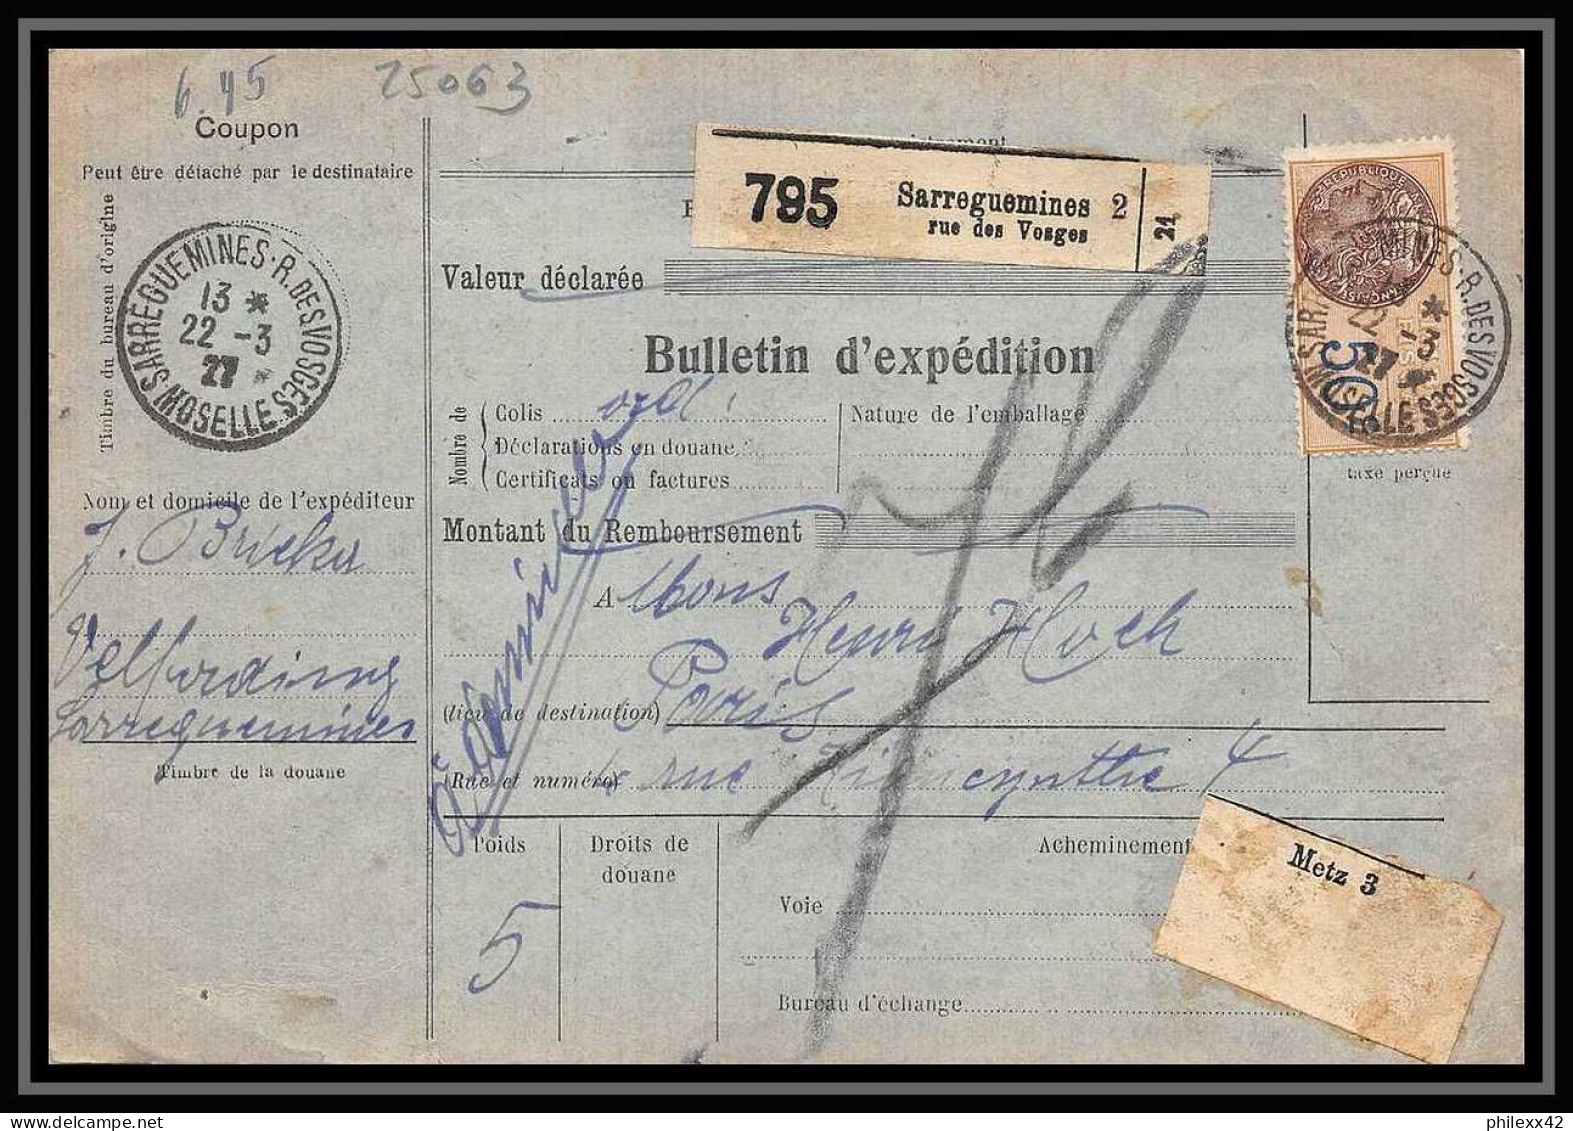 25063 Bulletin D'expédition France Colis Postaux Fiscal Haut Rhin 1927 Sarreguemines Semeuse + Merson 145+206 - Covers & Documents